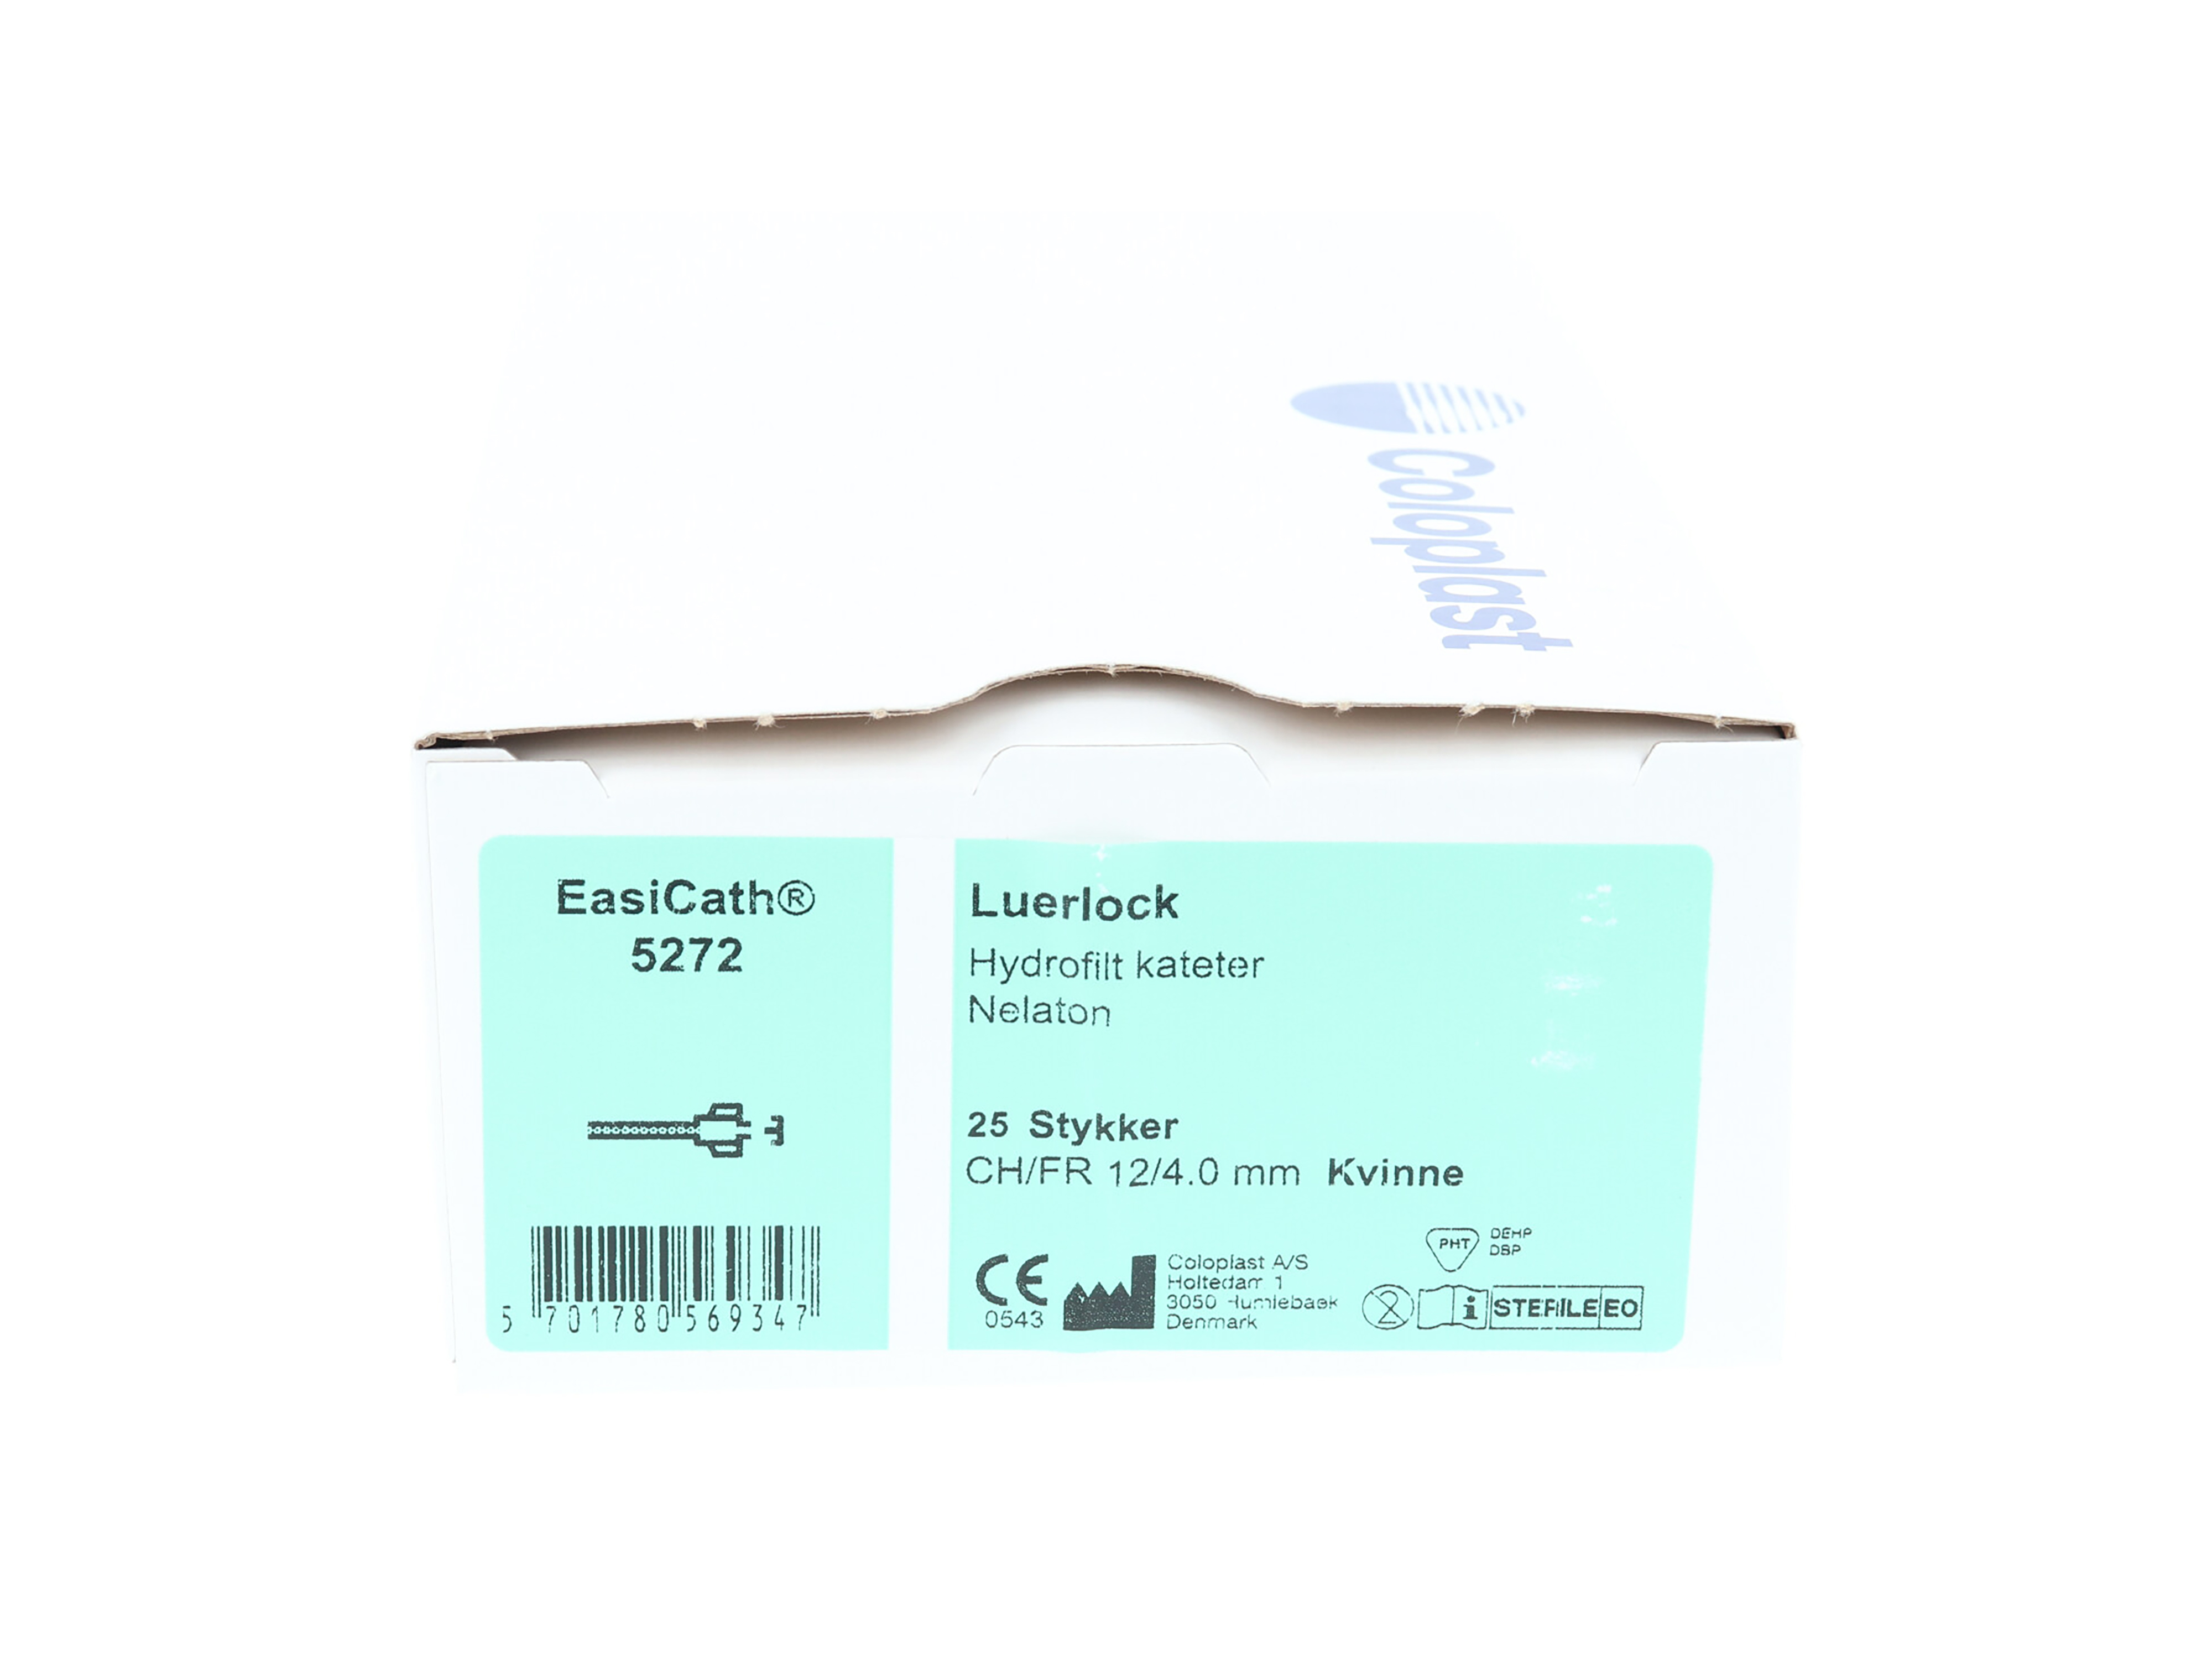 EasiCath Kateter m/luerlock, 5272, Nelaton for kvinner 20 cm, CH 12, 25 stk.